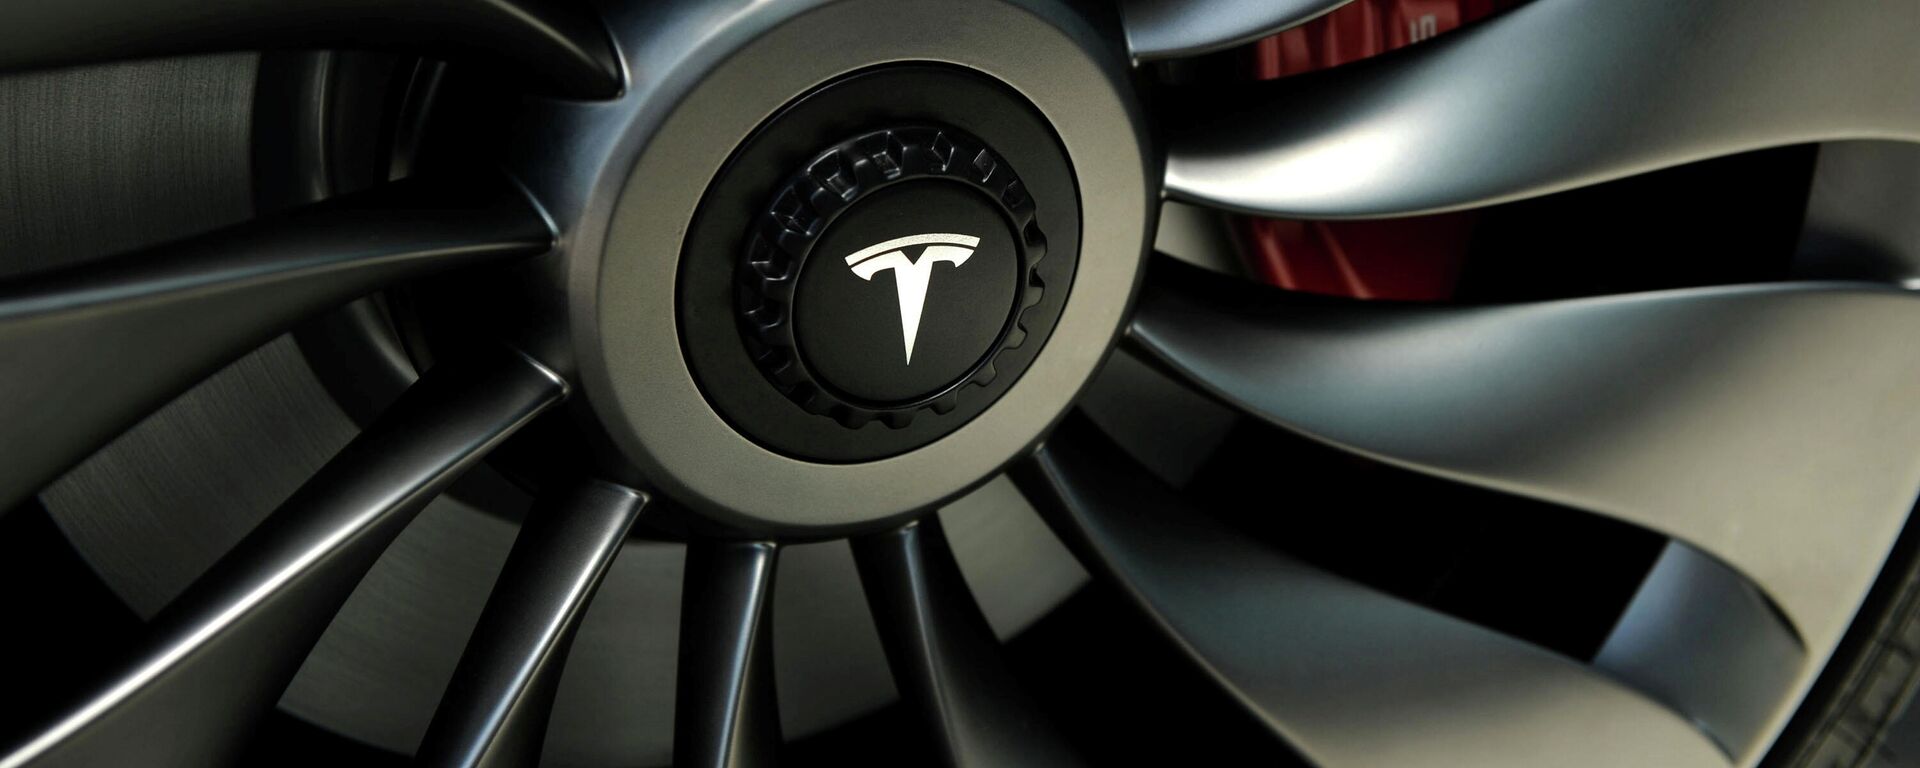 Elon Musk'ın kurucusu ve CEO'su olduğu elektrikli araç devinin ürettiği Tesla Model 3'ün tekerleği - Sputnik Türkiye, 1920, 10.05.2022